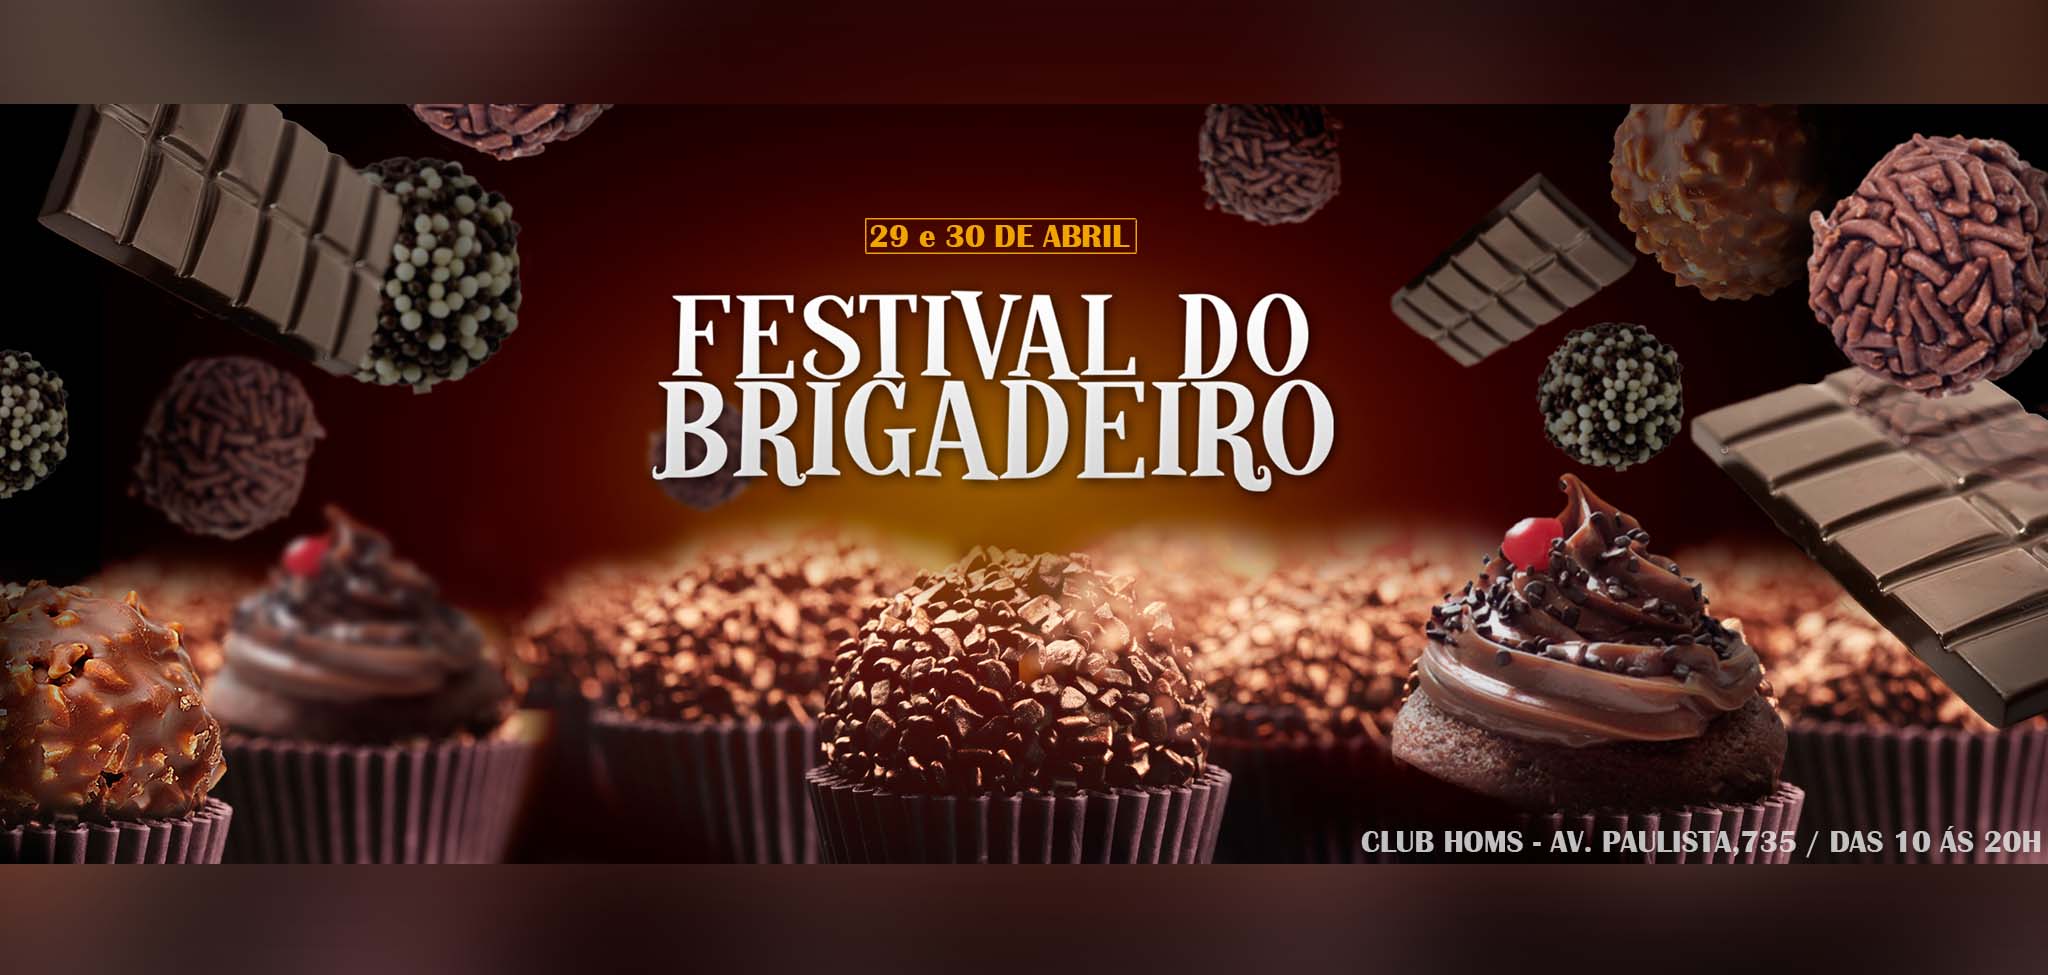 Próximos Eventos – Festival de Brigadeiro -Av. Paulista, Club Homs